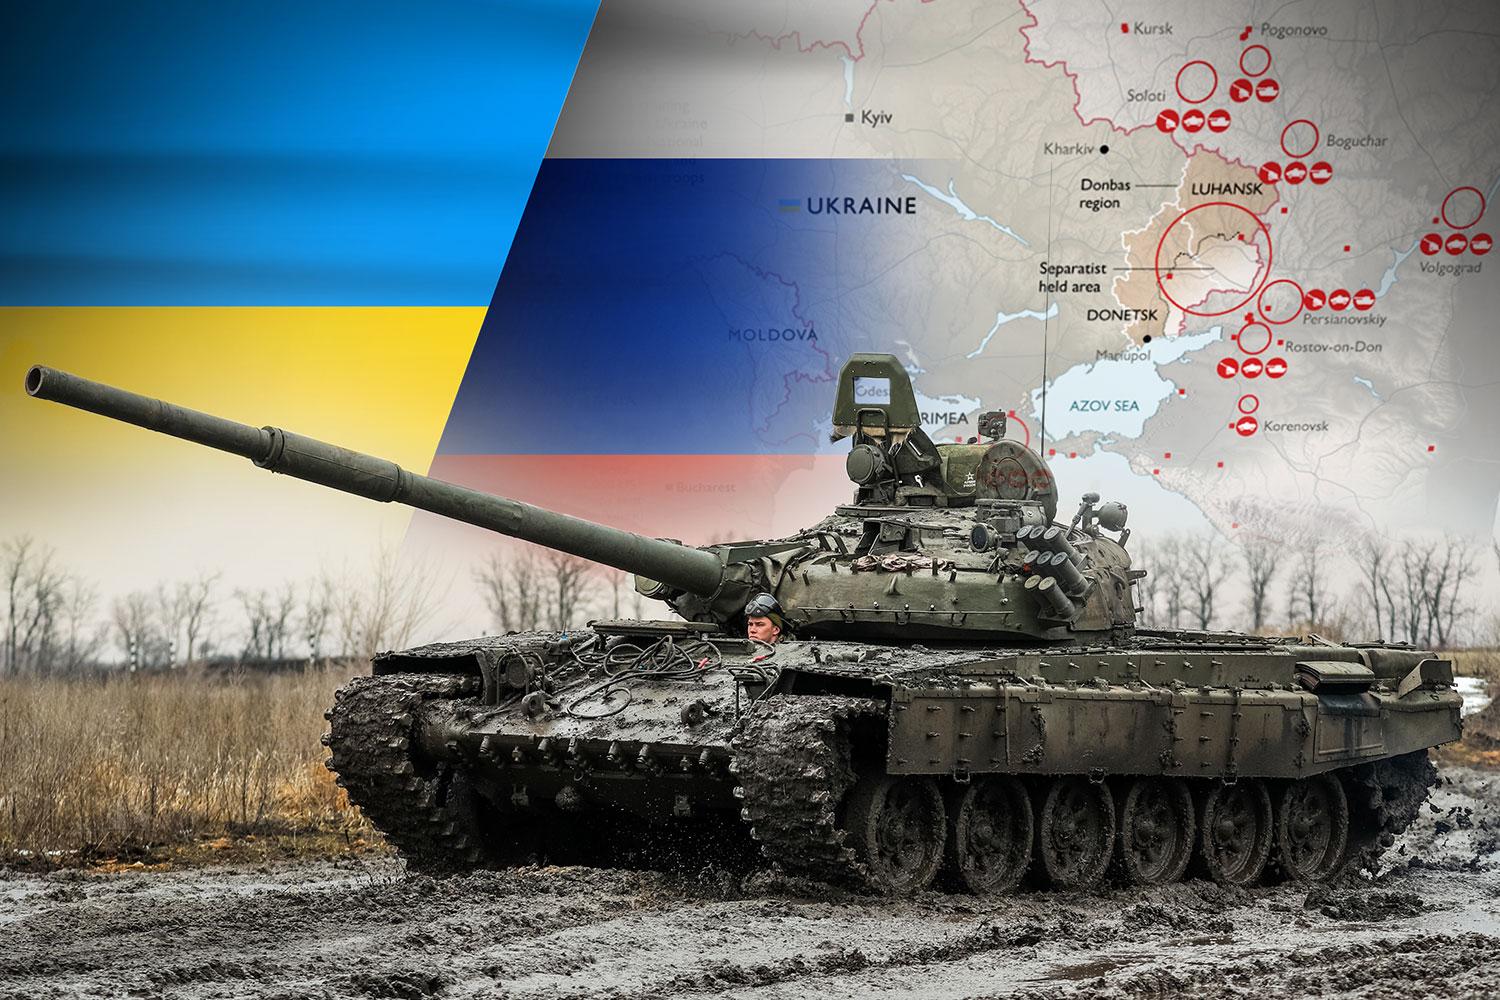 ALARMĂ DE RĂZBOI! Vladimir Putin anunță începerea ofensivei militare contra Ucrainei (VIDEO)